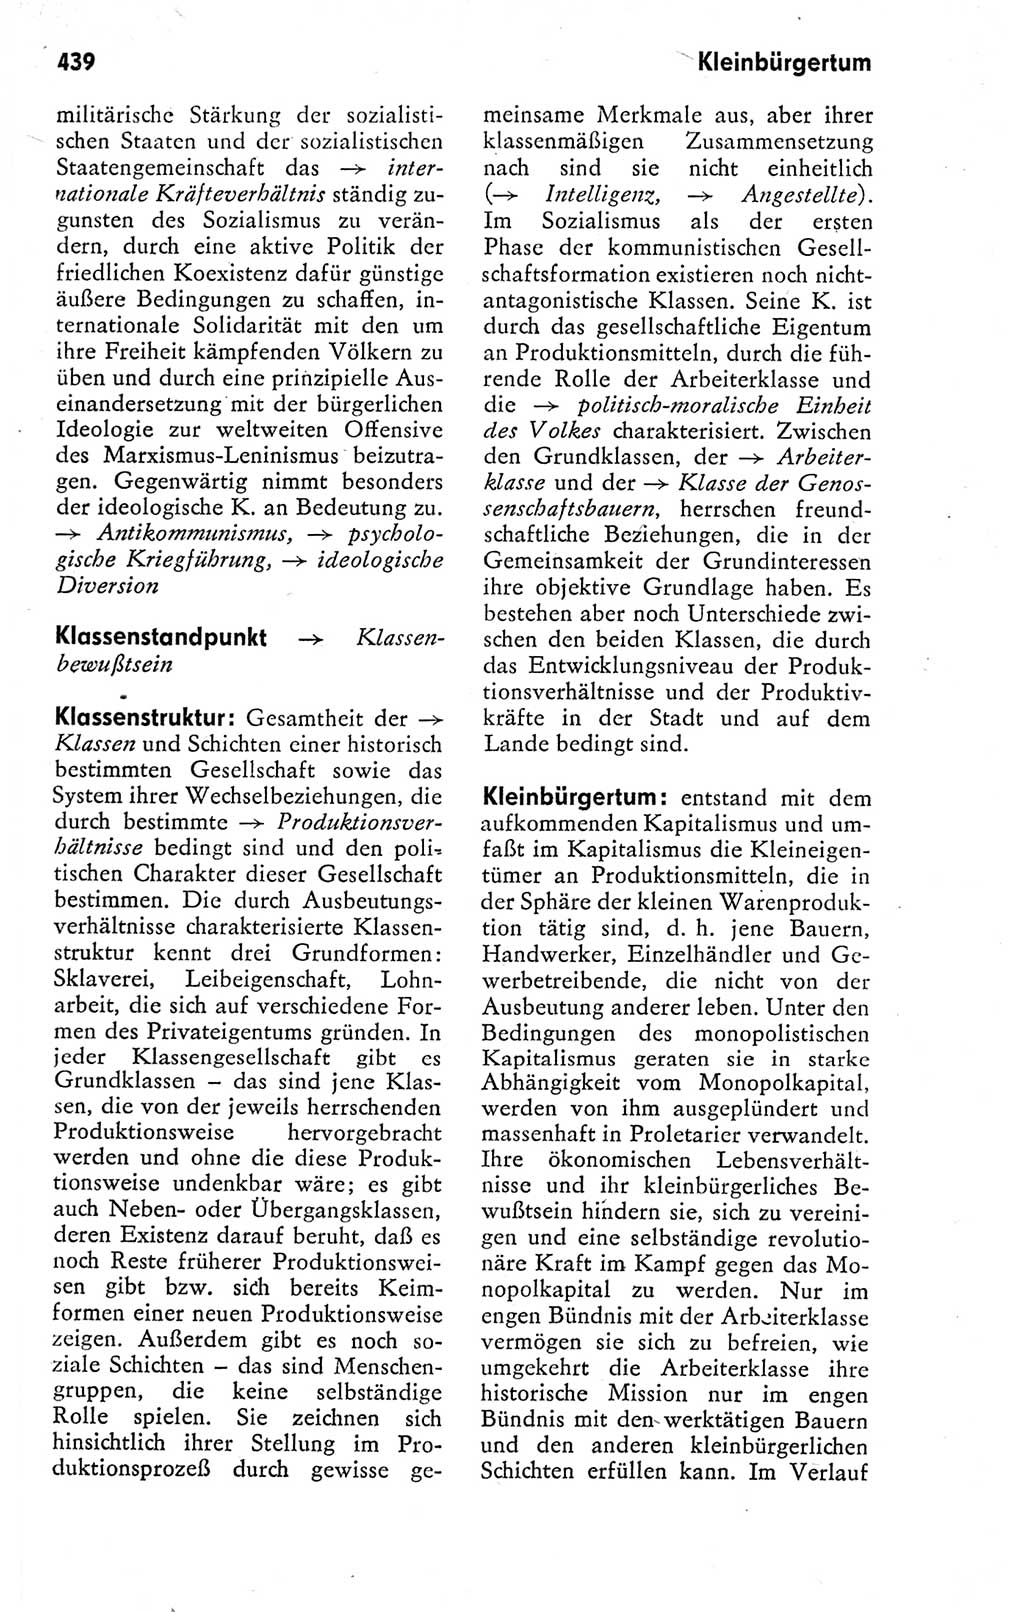 Kleines politisches Wörterbuch [Deutsche Demokratische Republik (DDR)] 1978, Seite 439 (Kl. pol. Wb. DDR 1978, S. 439)